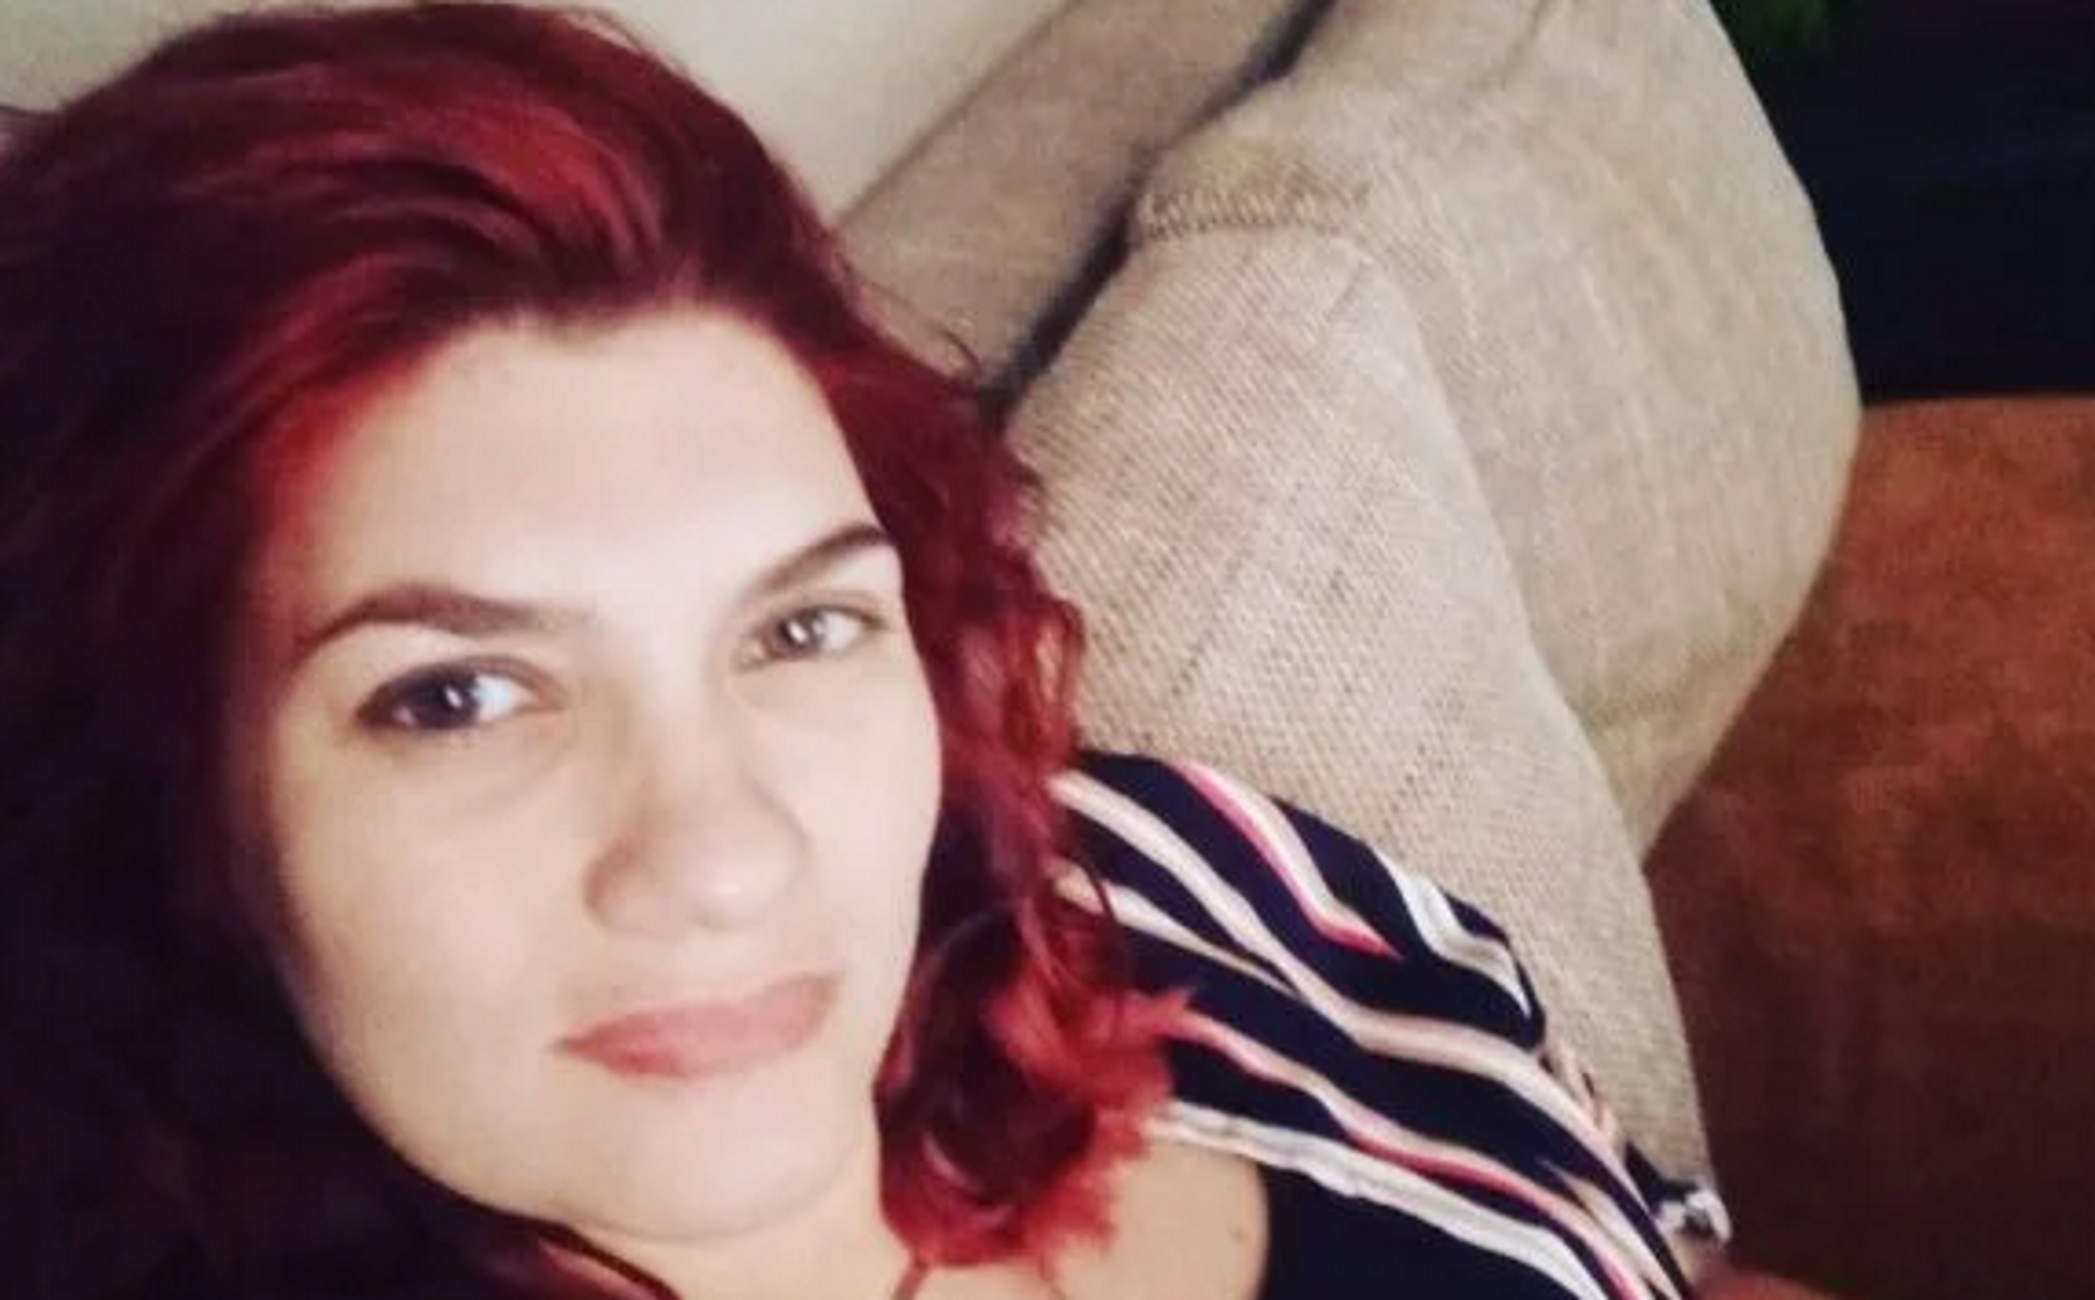 Ρούλα Πισπιρίγκου: «Την έχω ικανή να σκοτώσει τα παιδιά της για τον Μάνο» λέει πρώην σύντροφος της 33χρονης